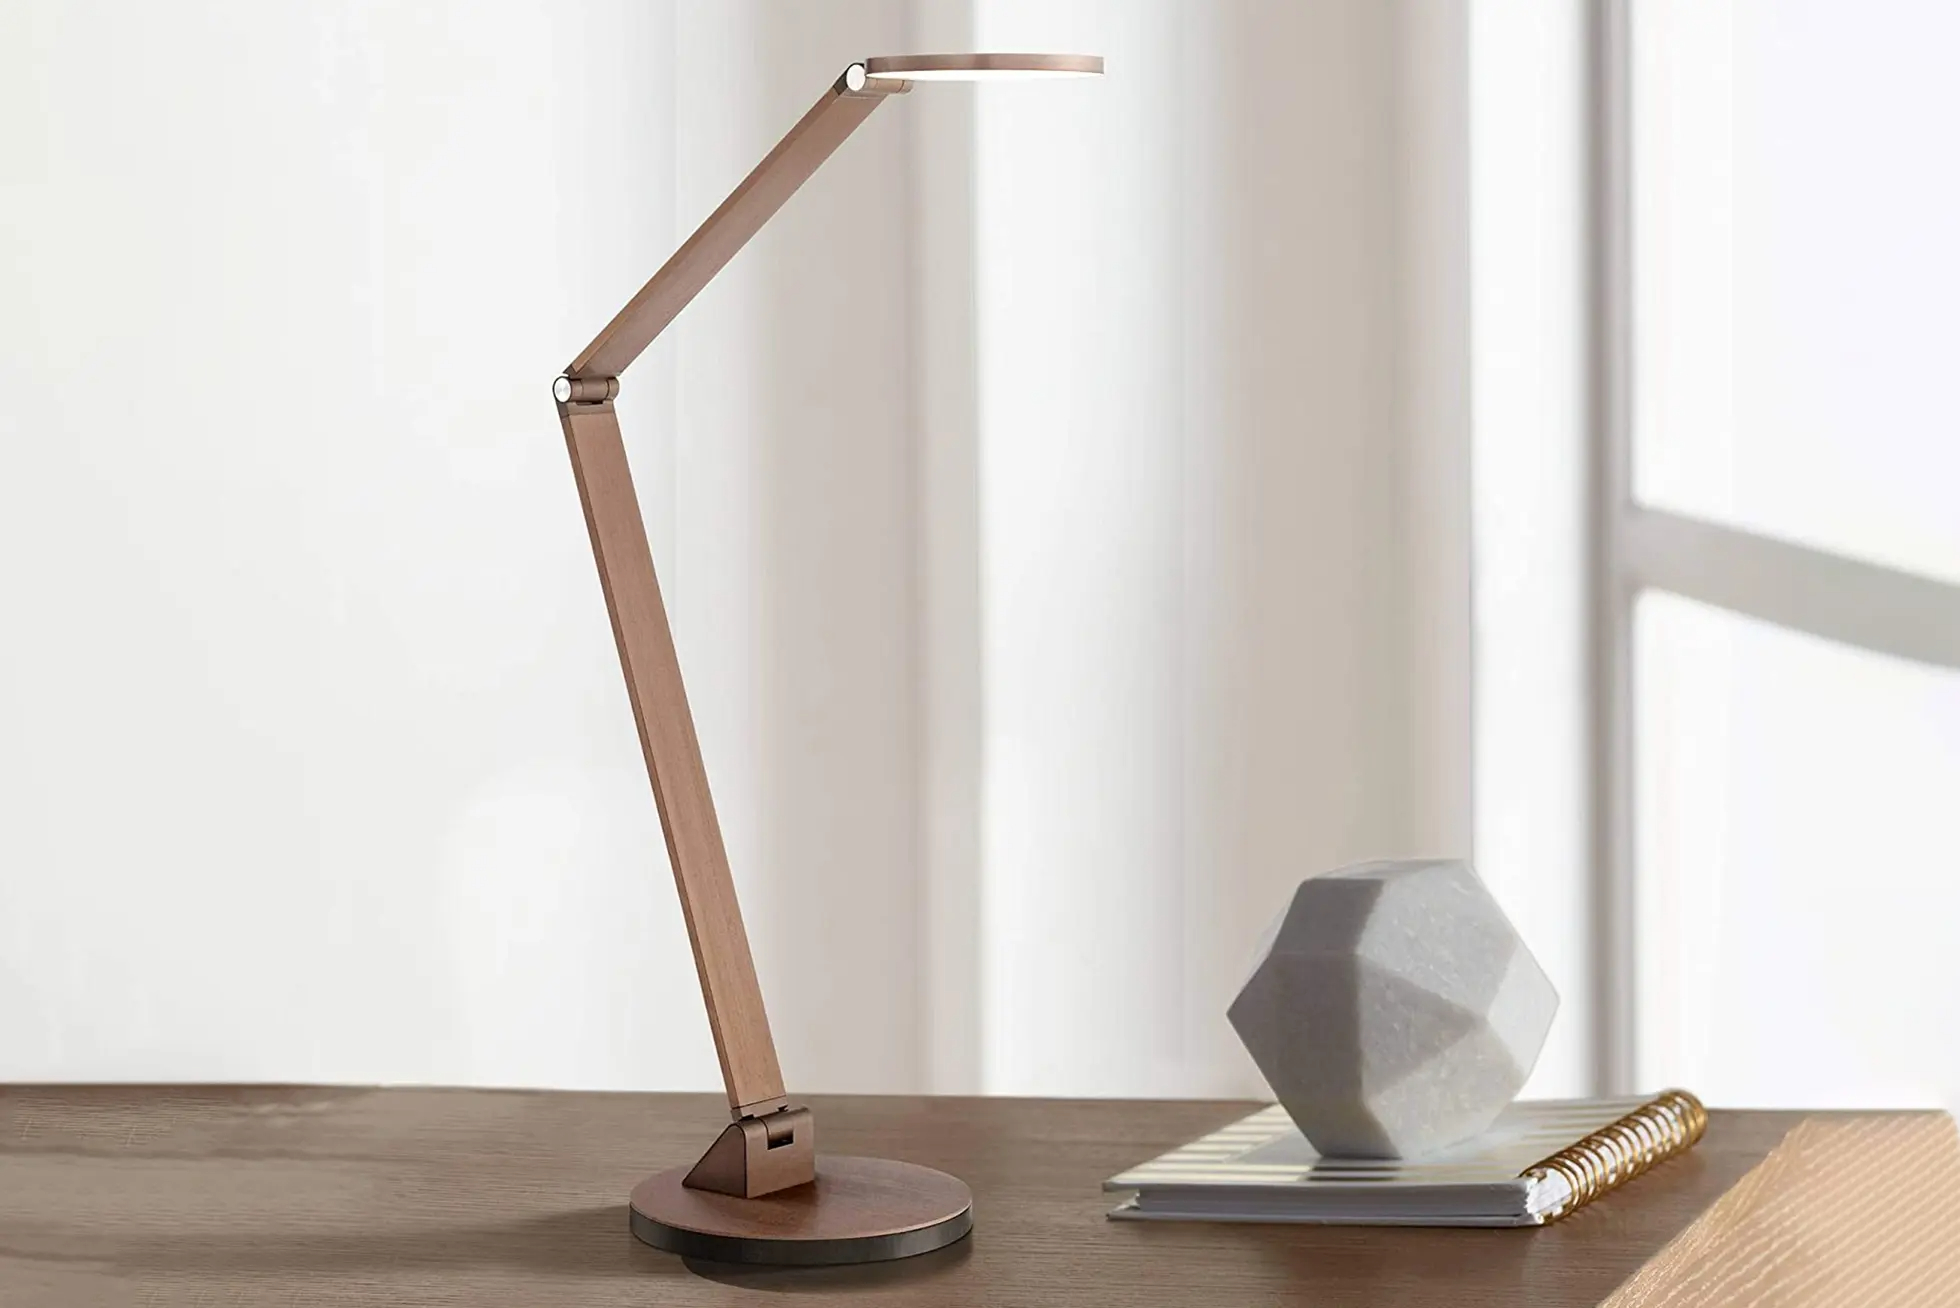 Sleek crane style desk lamp